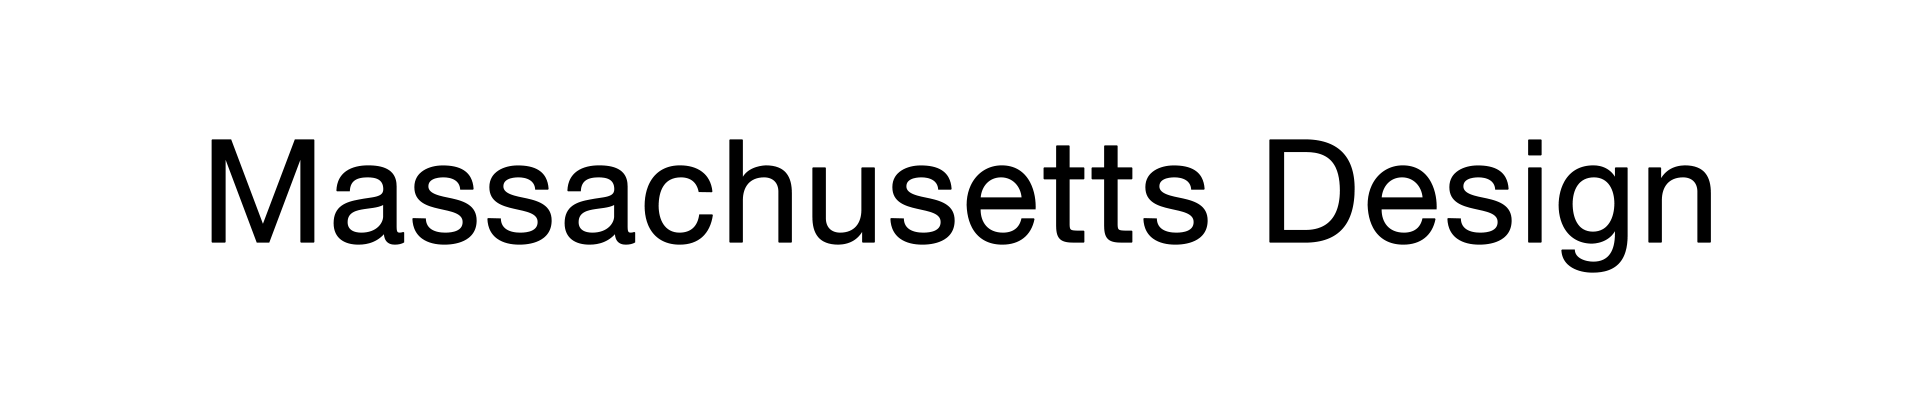 massachusetts-design-logo